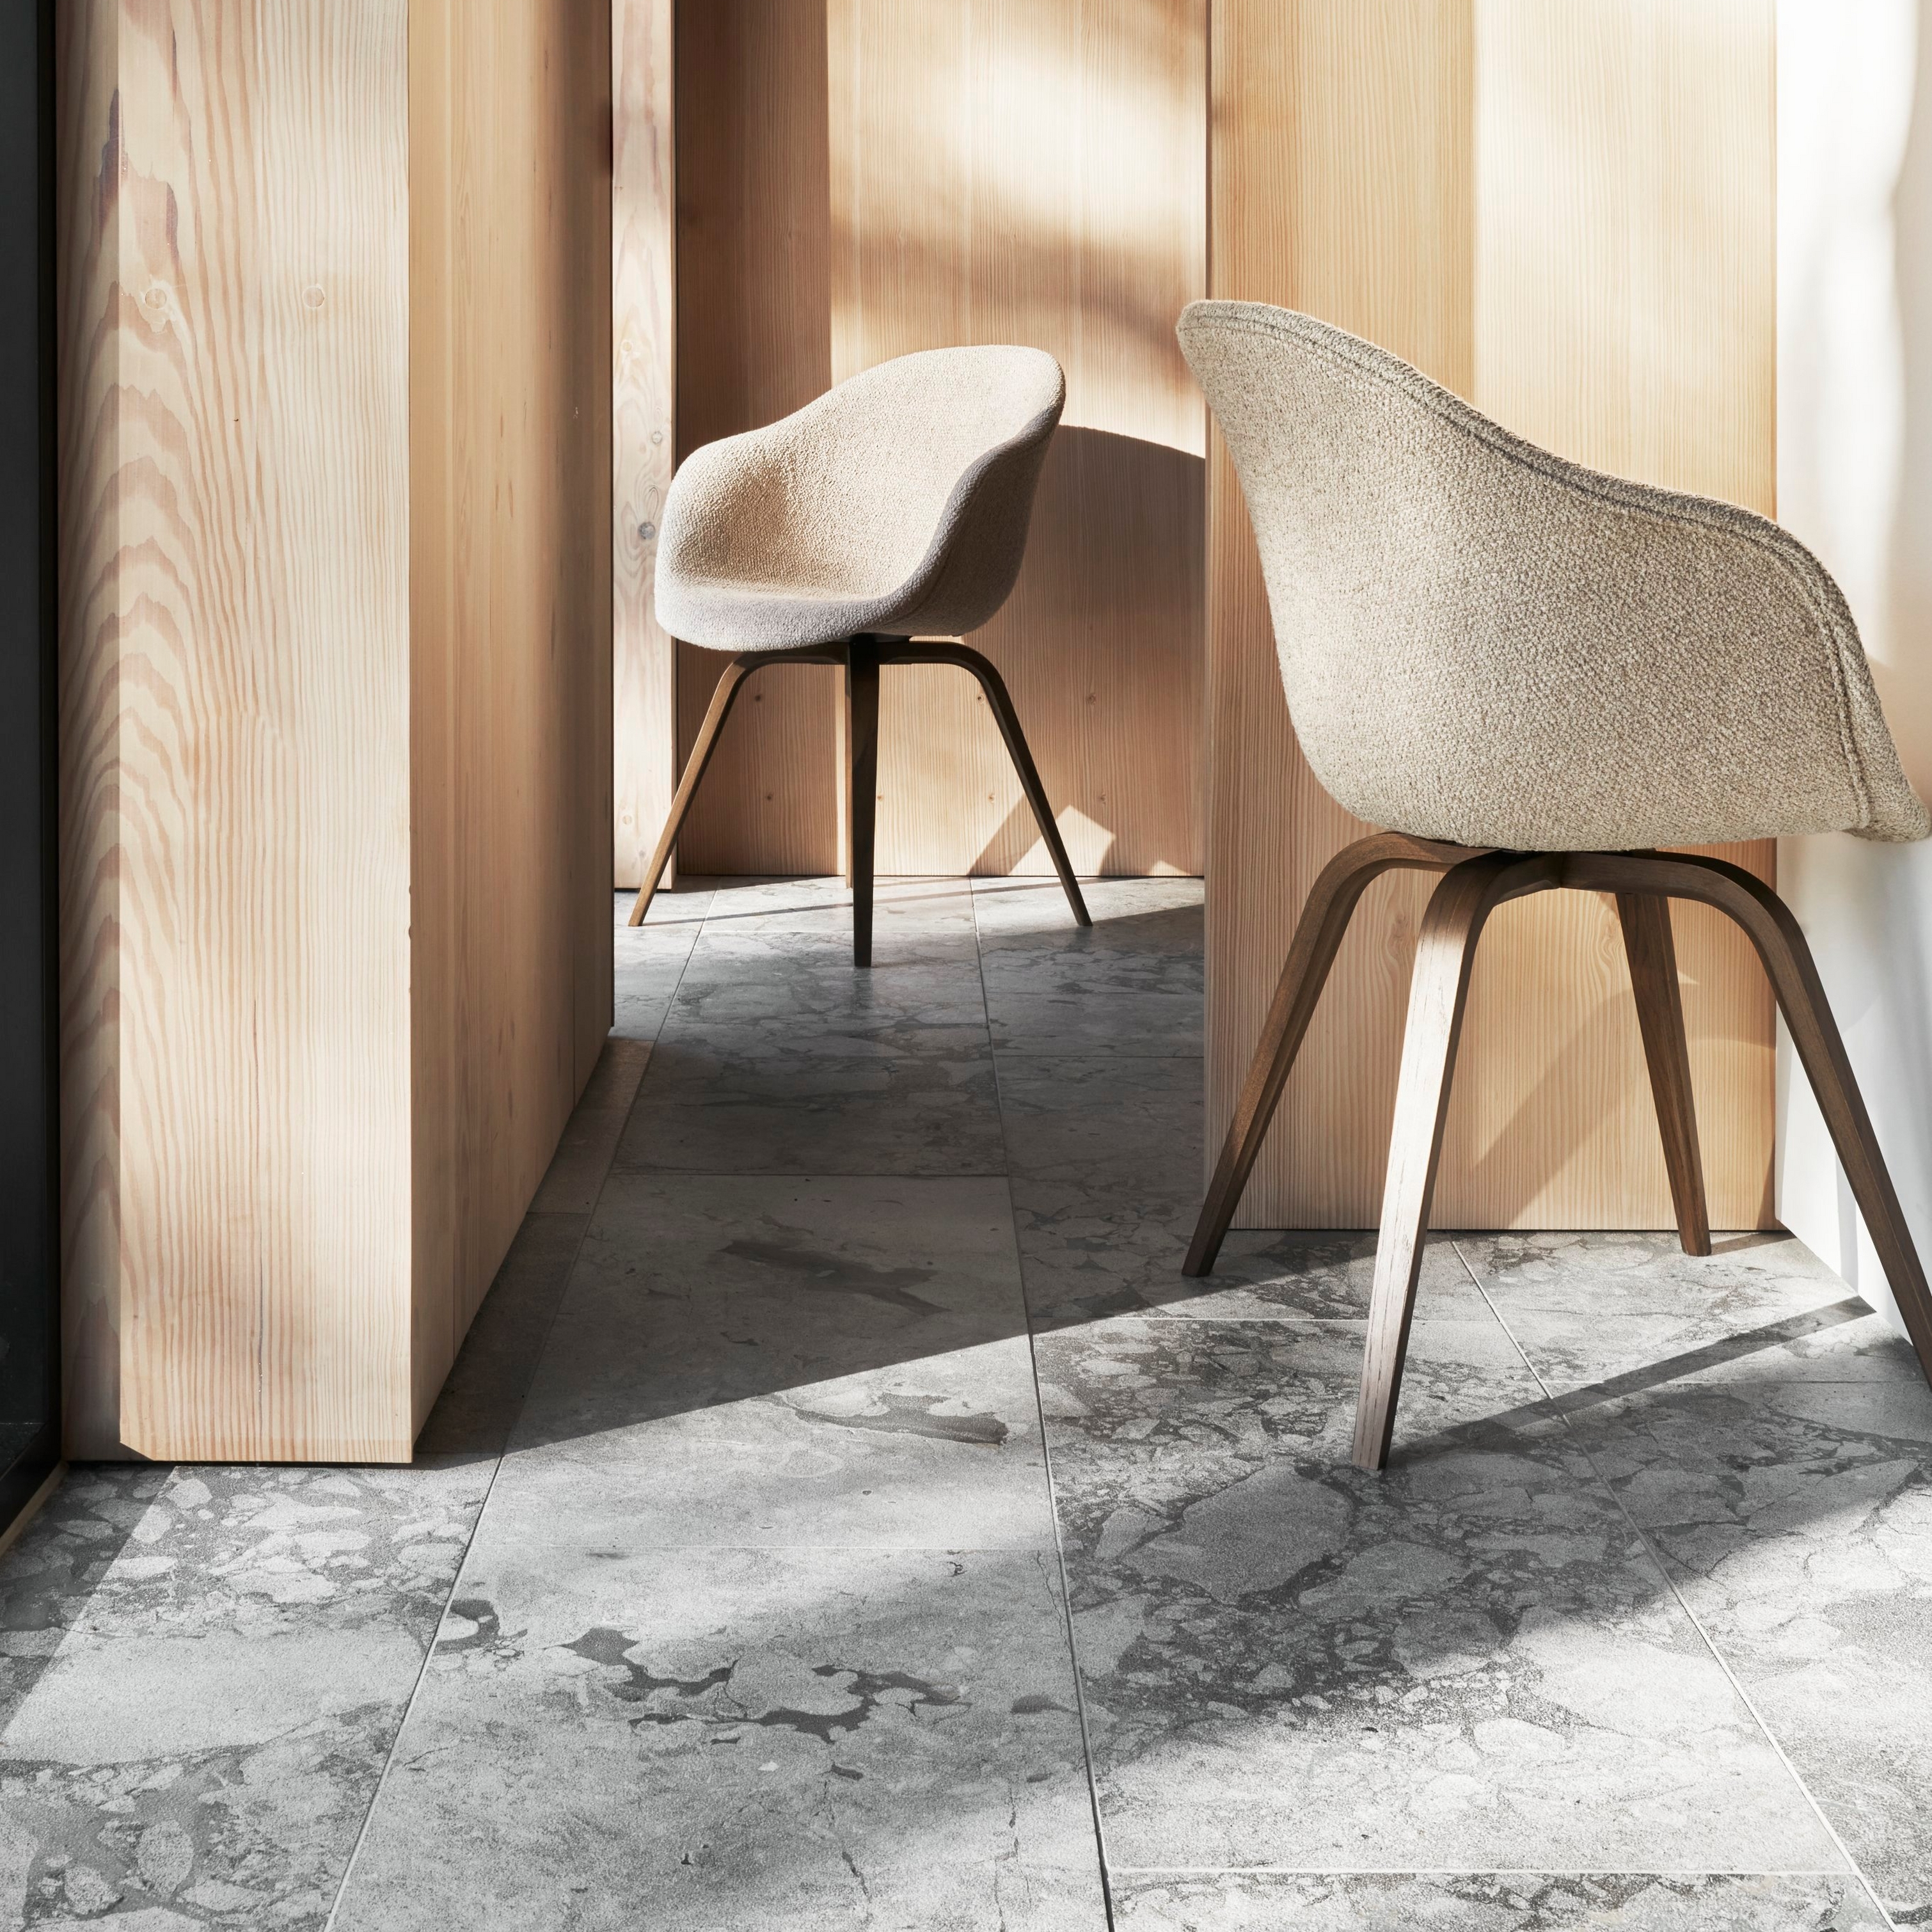 Espacio interior soleado con dos sillas Hauge, paredes de madera y suelo de mármol.